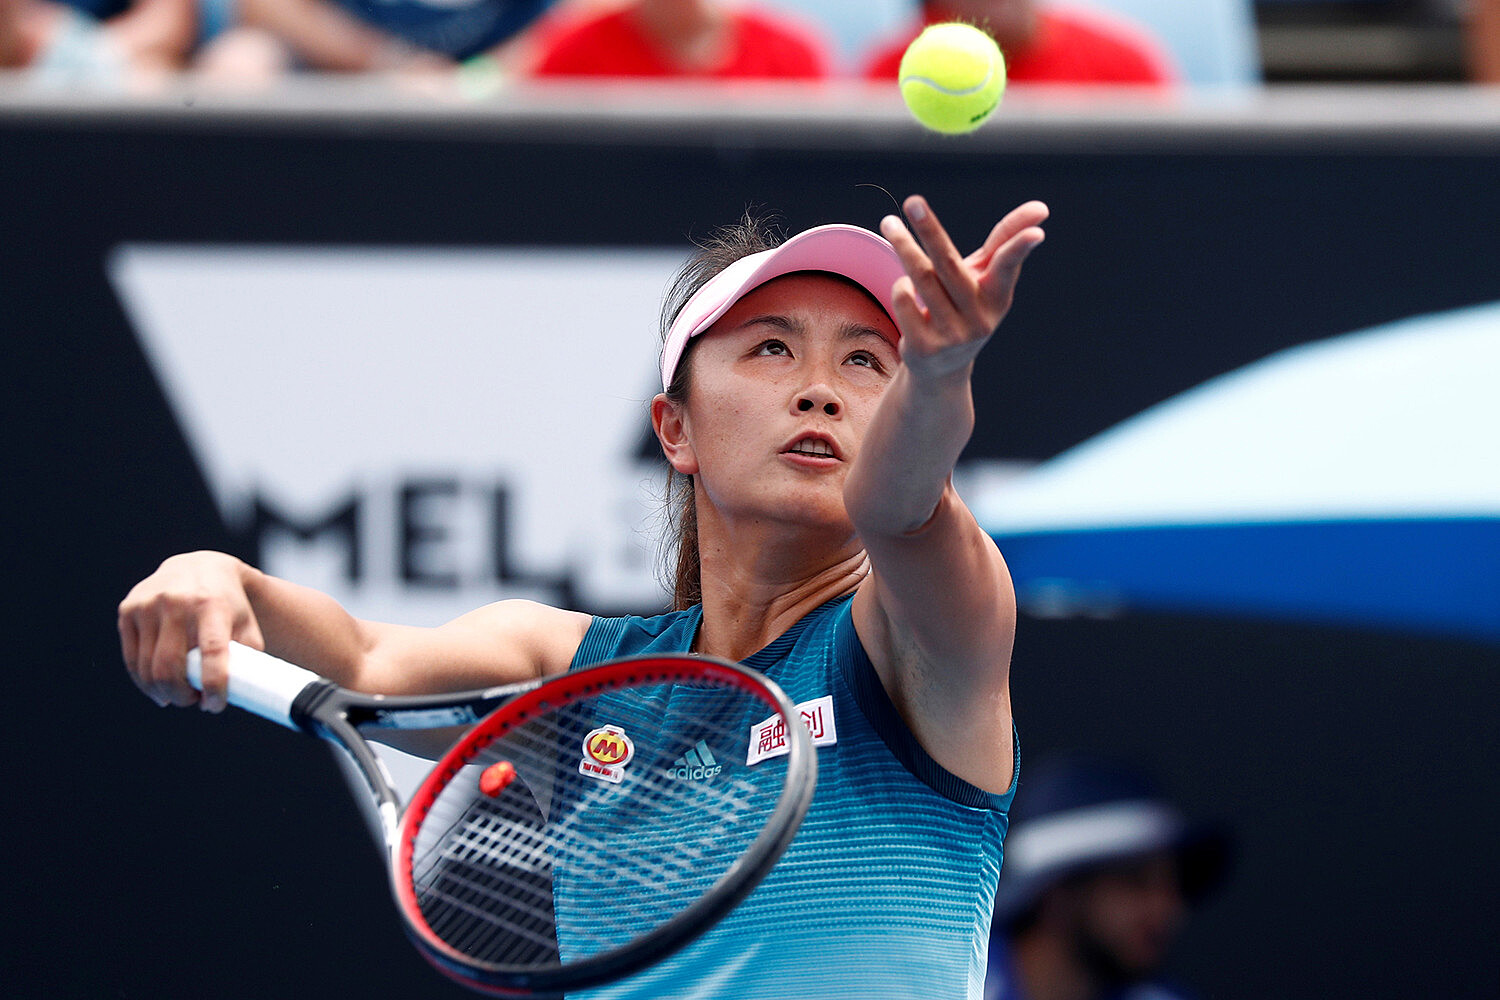 МОК и Китаю угрожают бойкотом из-за теннисистки